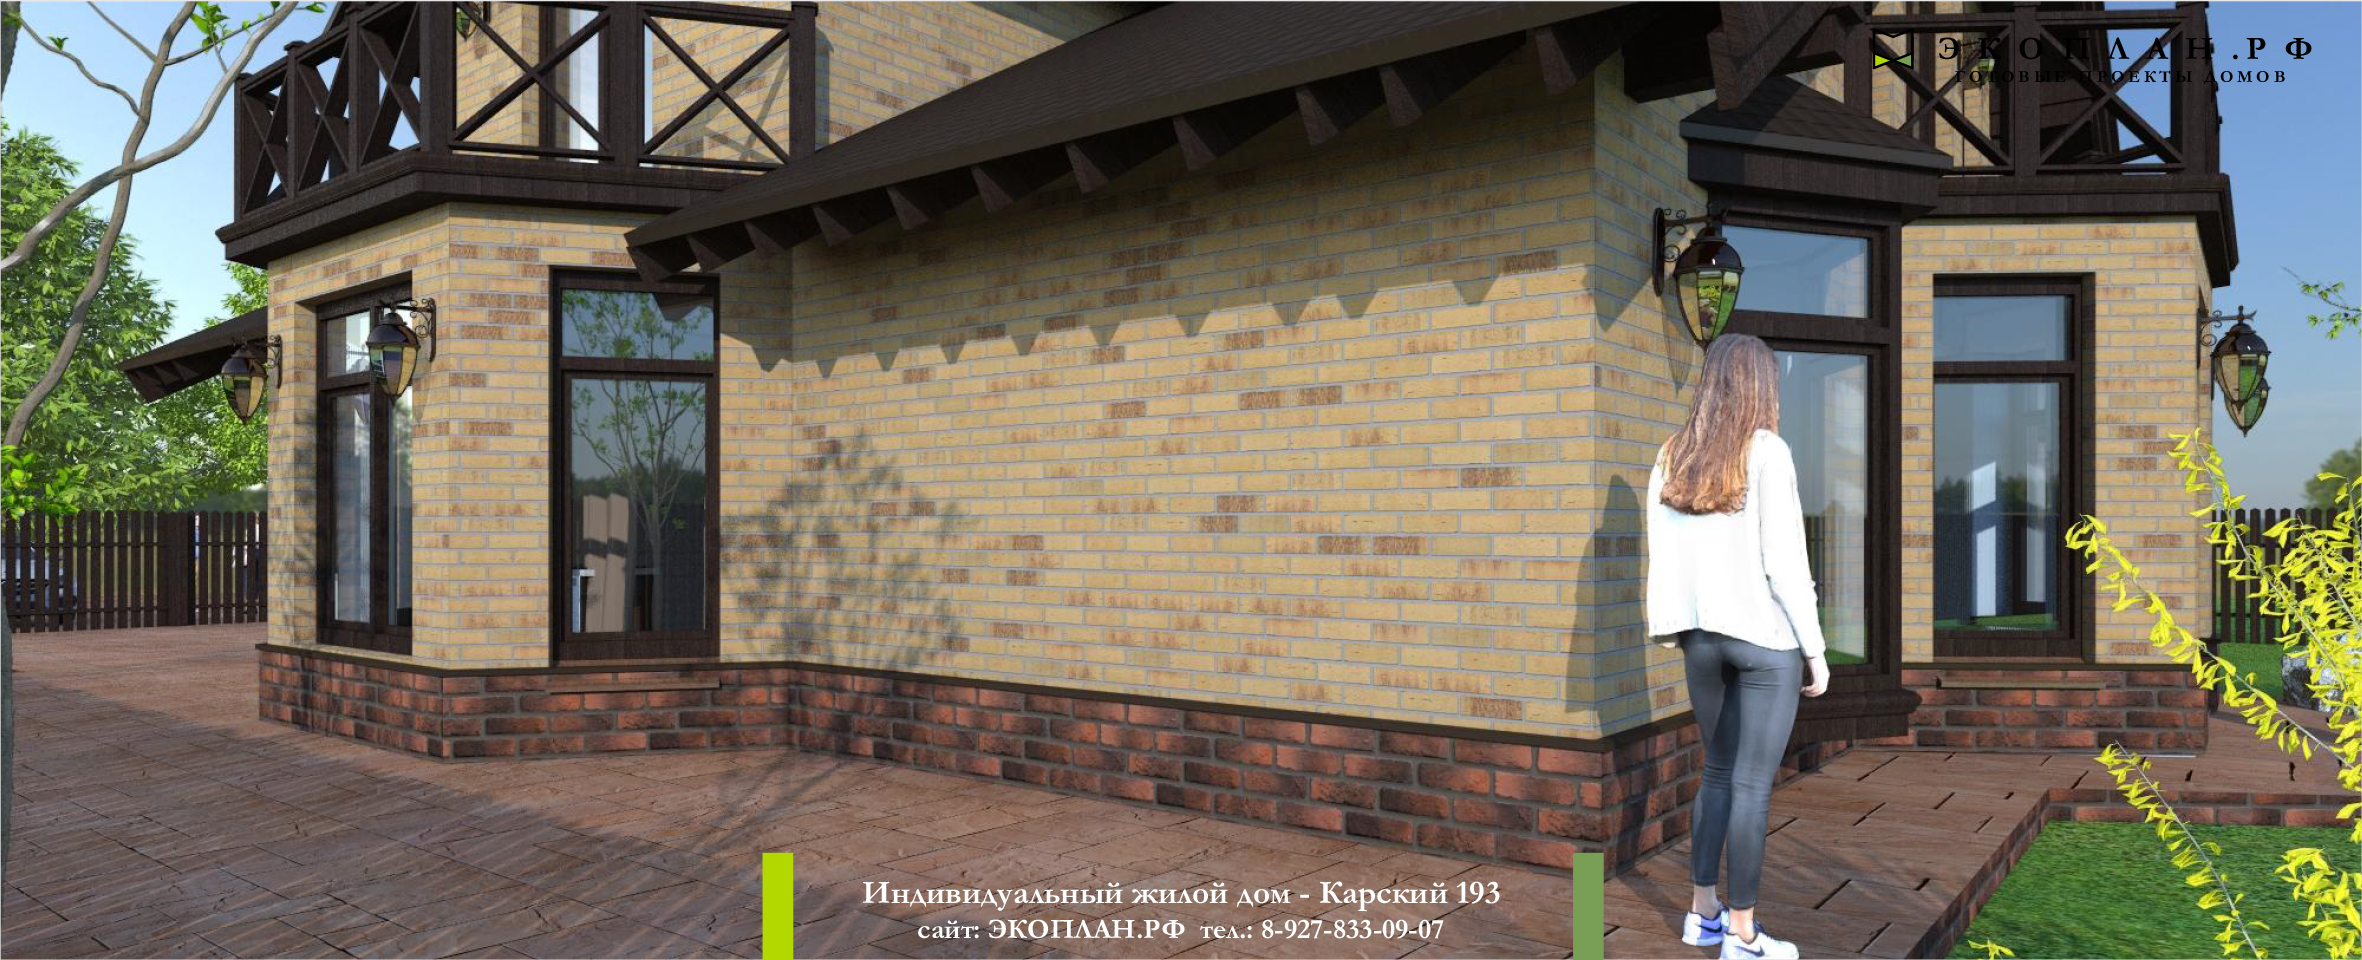 Карский 193 - Готовый проект дома - Экоплан.рф фасад